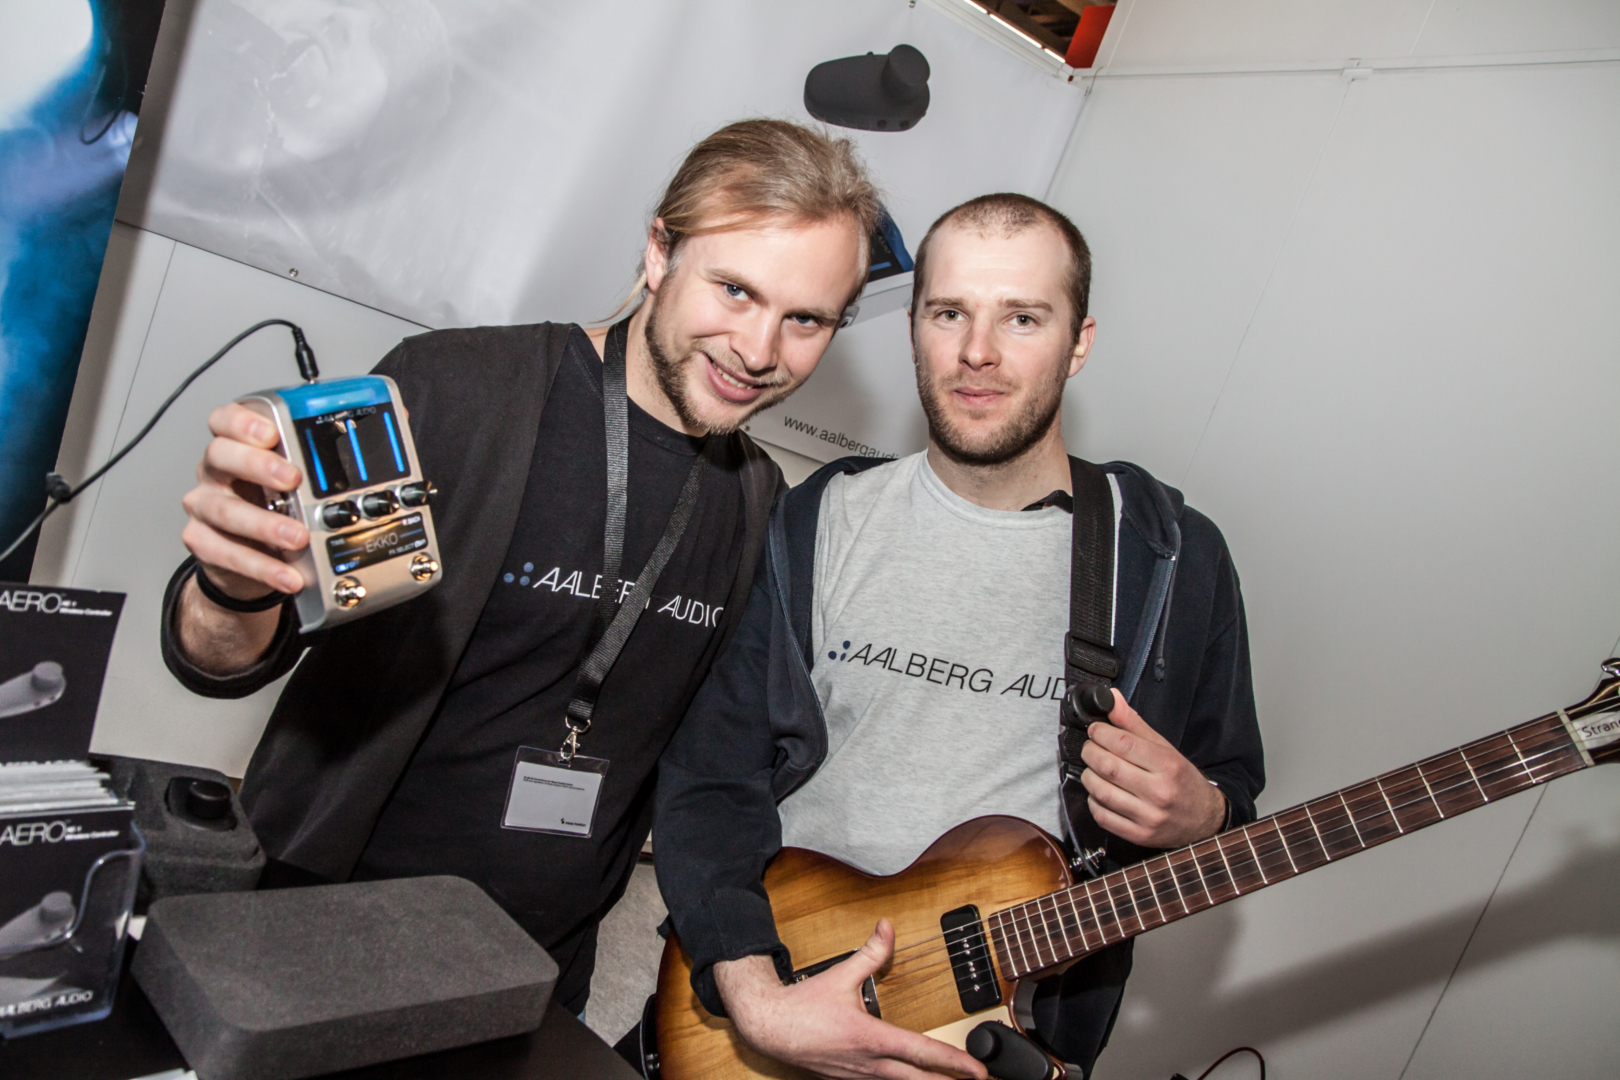 Optimister: Aalberg Audio prøver å finansiere produksjon av en trådløs effektpedal via crowdfunding. Her er de på årets Musikmesse i Frankfurt. Aleksander Torstensen viser fram prototypen, Rune Aalberg Alstad har en gitar med påmontert fjernstyringsenhet.